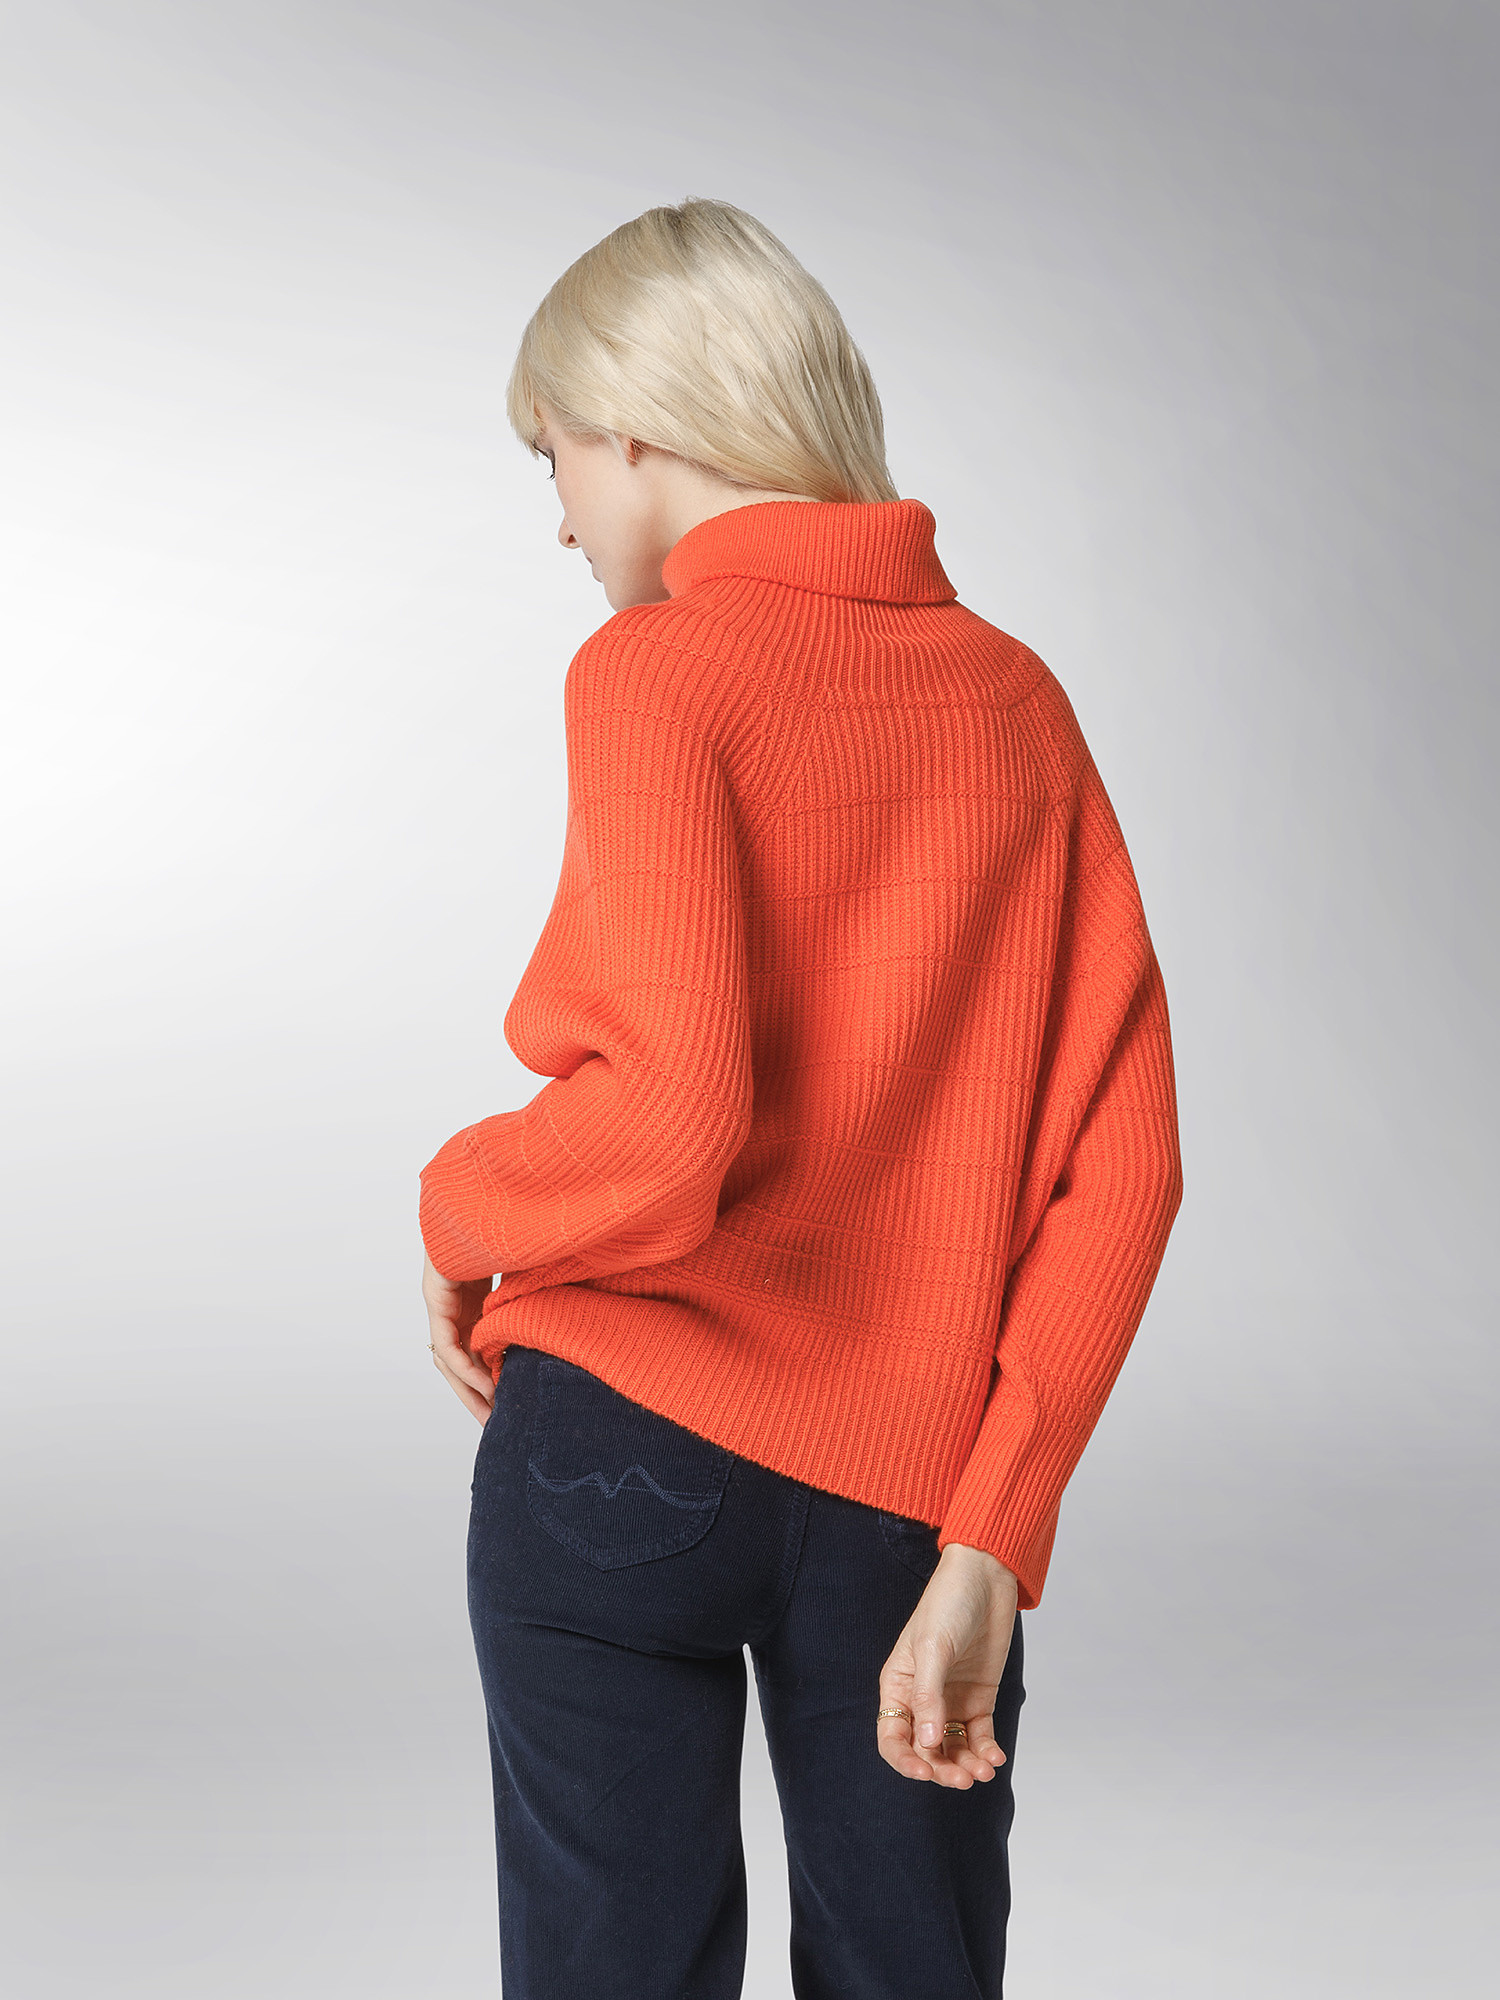 K Collection - Turtleneck pullover, Orange, large image number 4